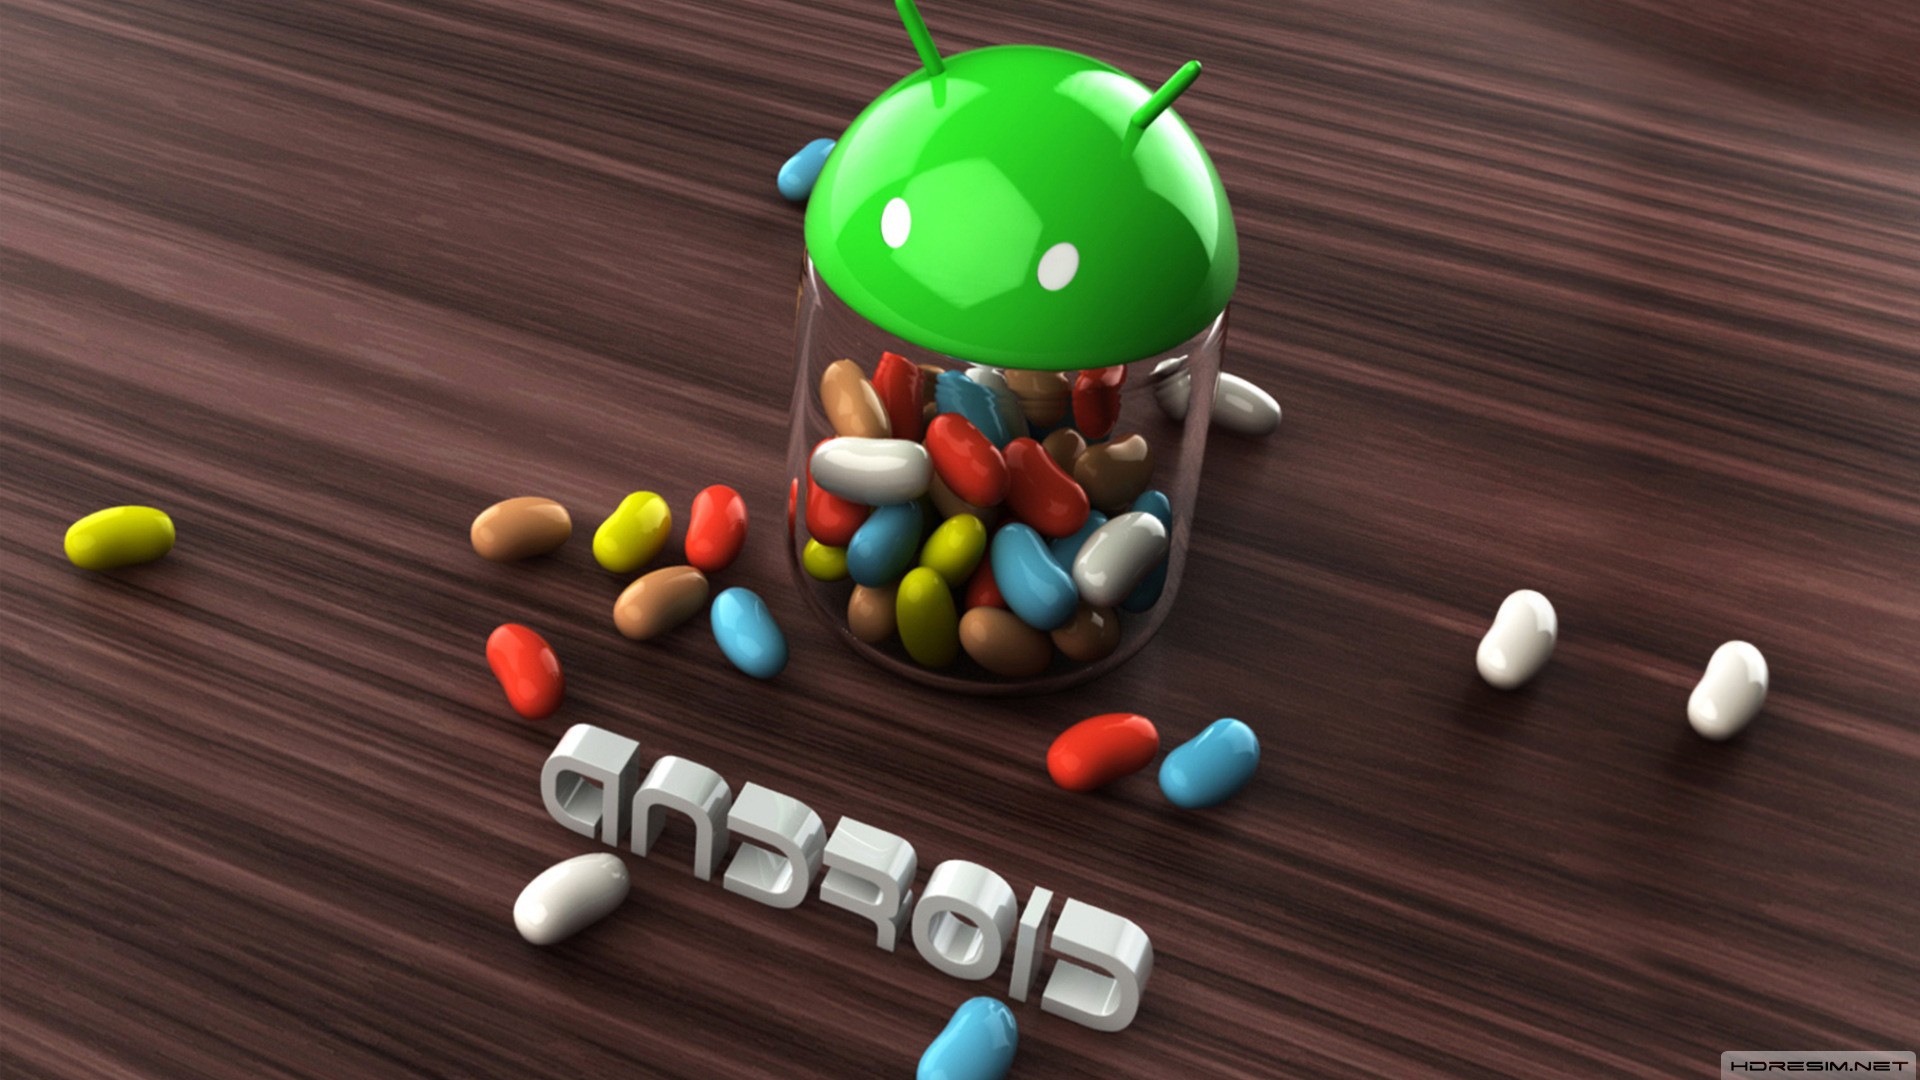 android,işletim sistemi,logo,marka,3d,jelly bean